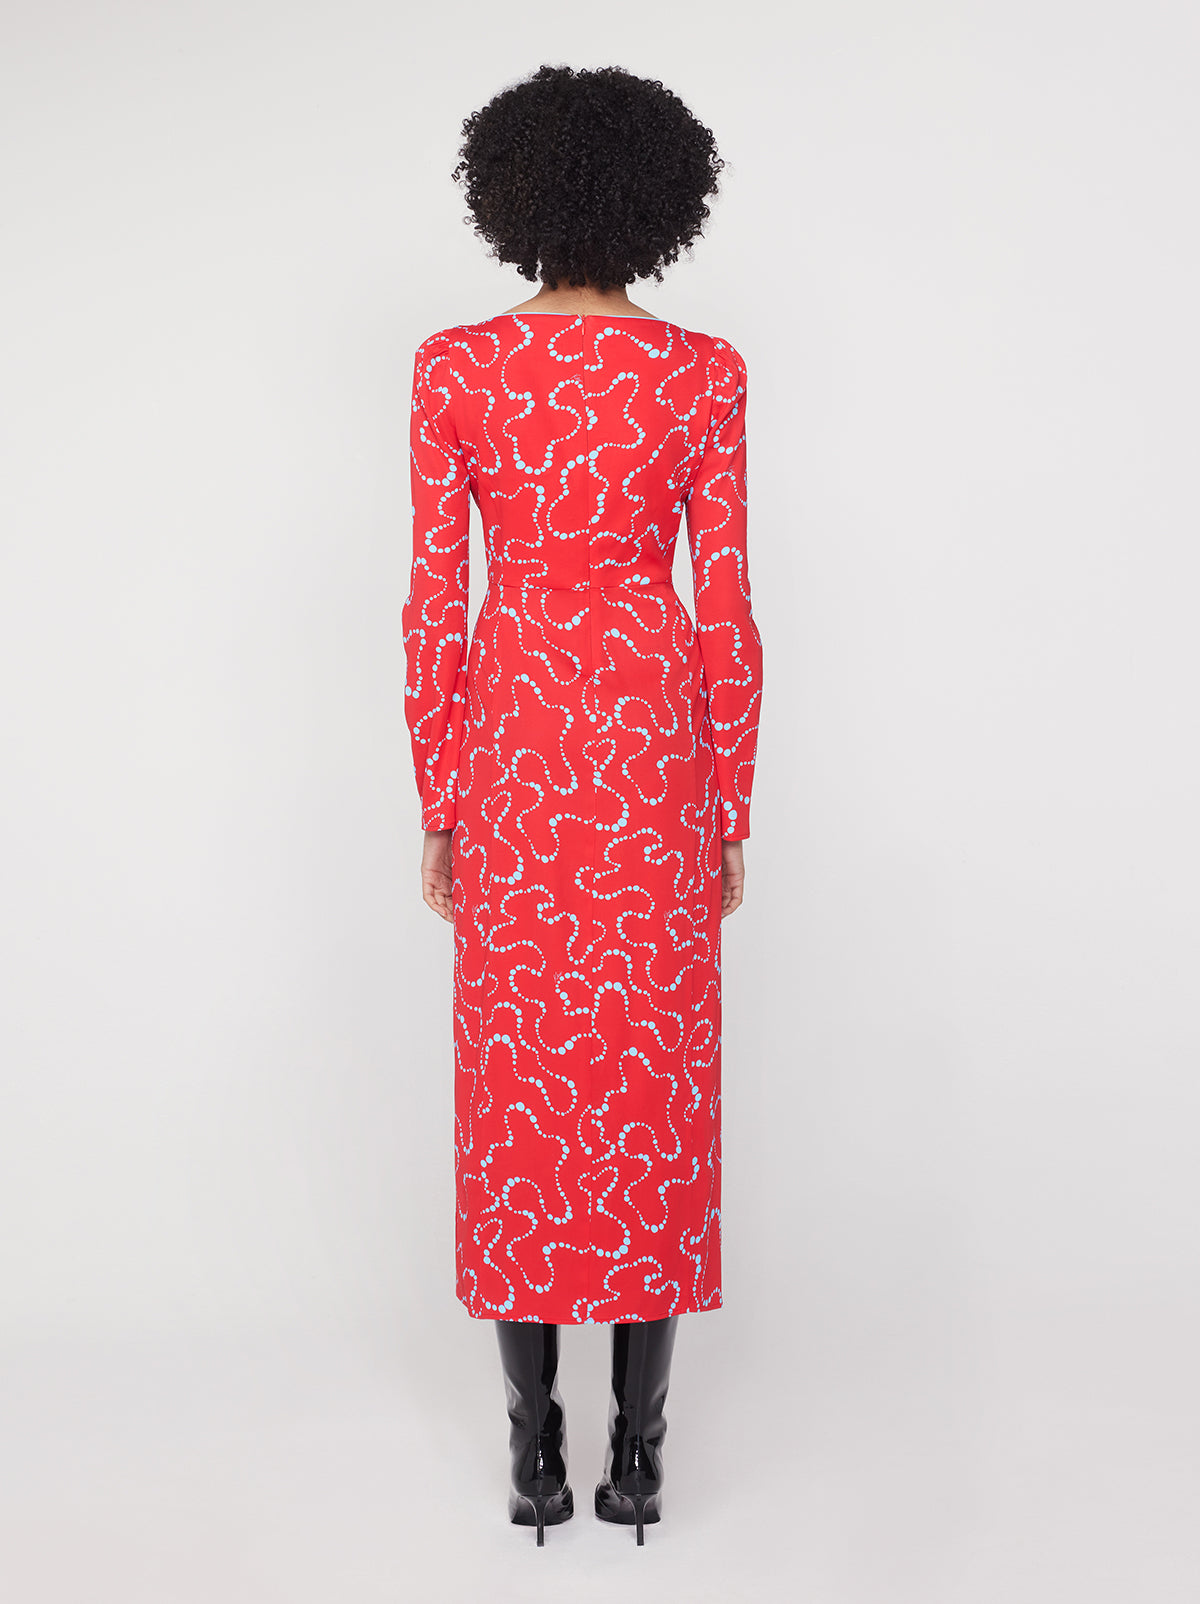 Rhonda Watermelon Trail Print Dress By KITRI Studio